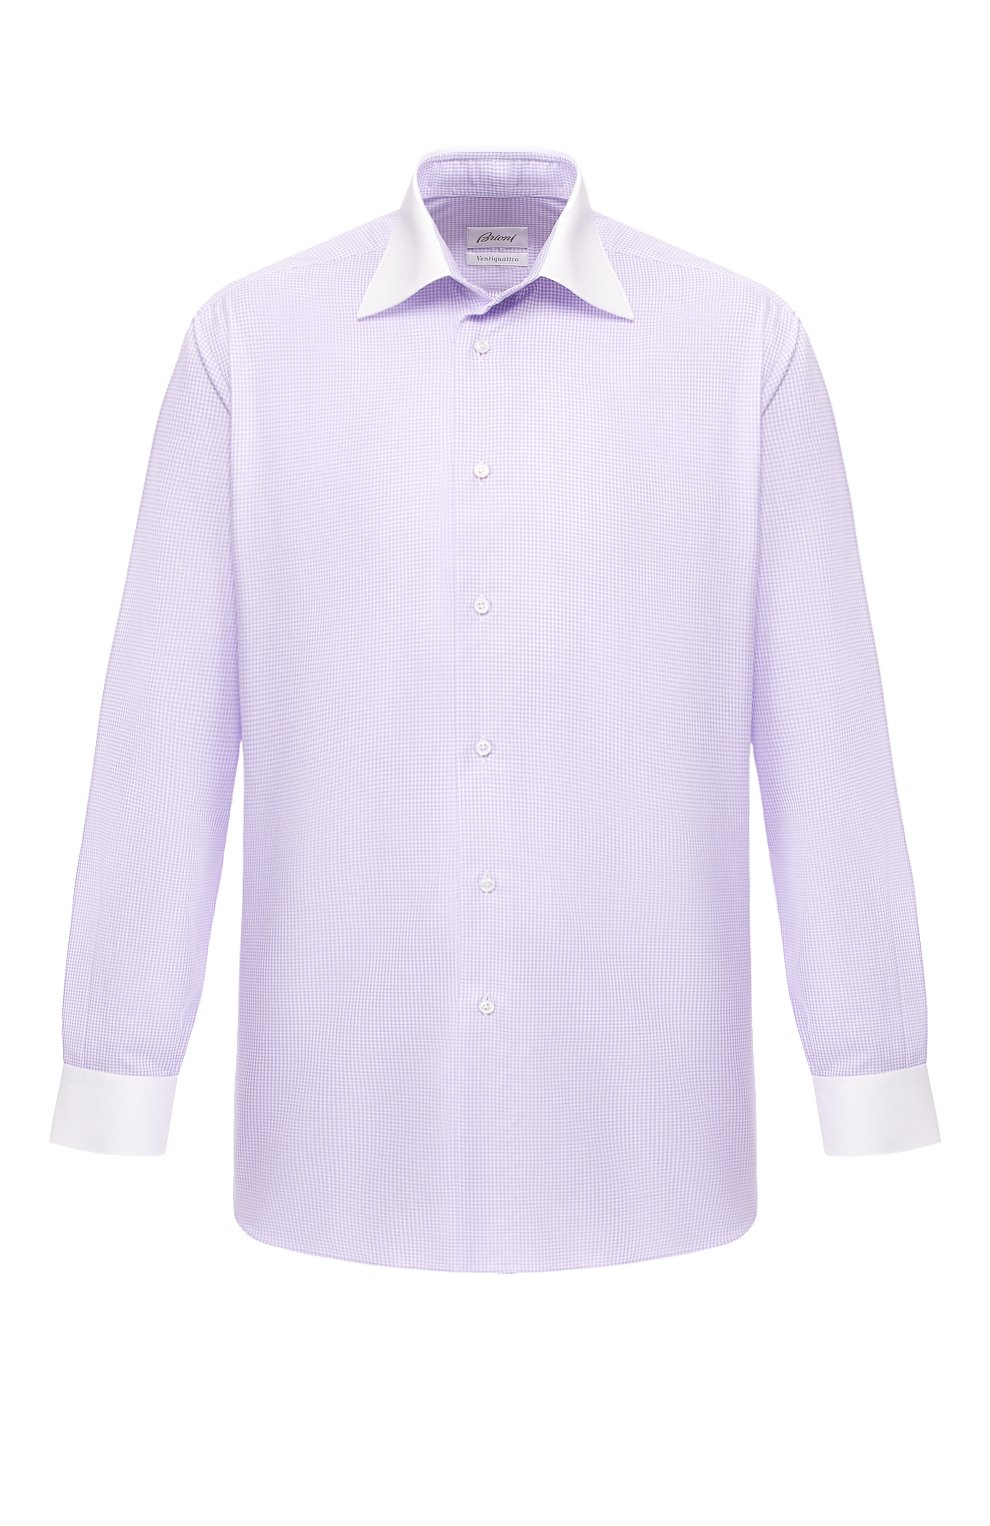 Рубашки Brioni, Хлопковая рубашка с воротником кент Brioni, Италия, Сиреневый, Хлопок: 100%;, 8553775  - купить